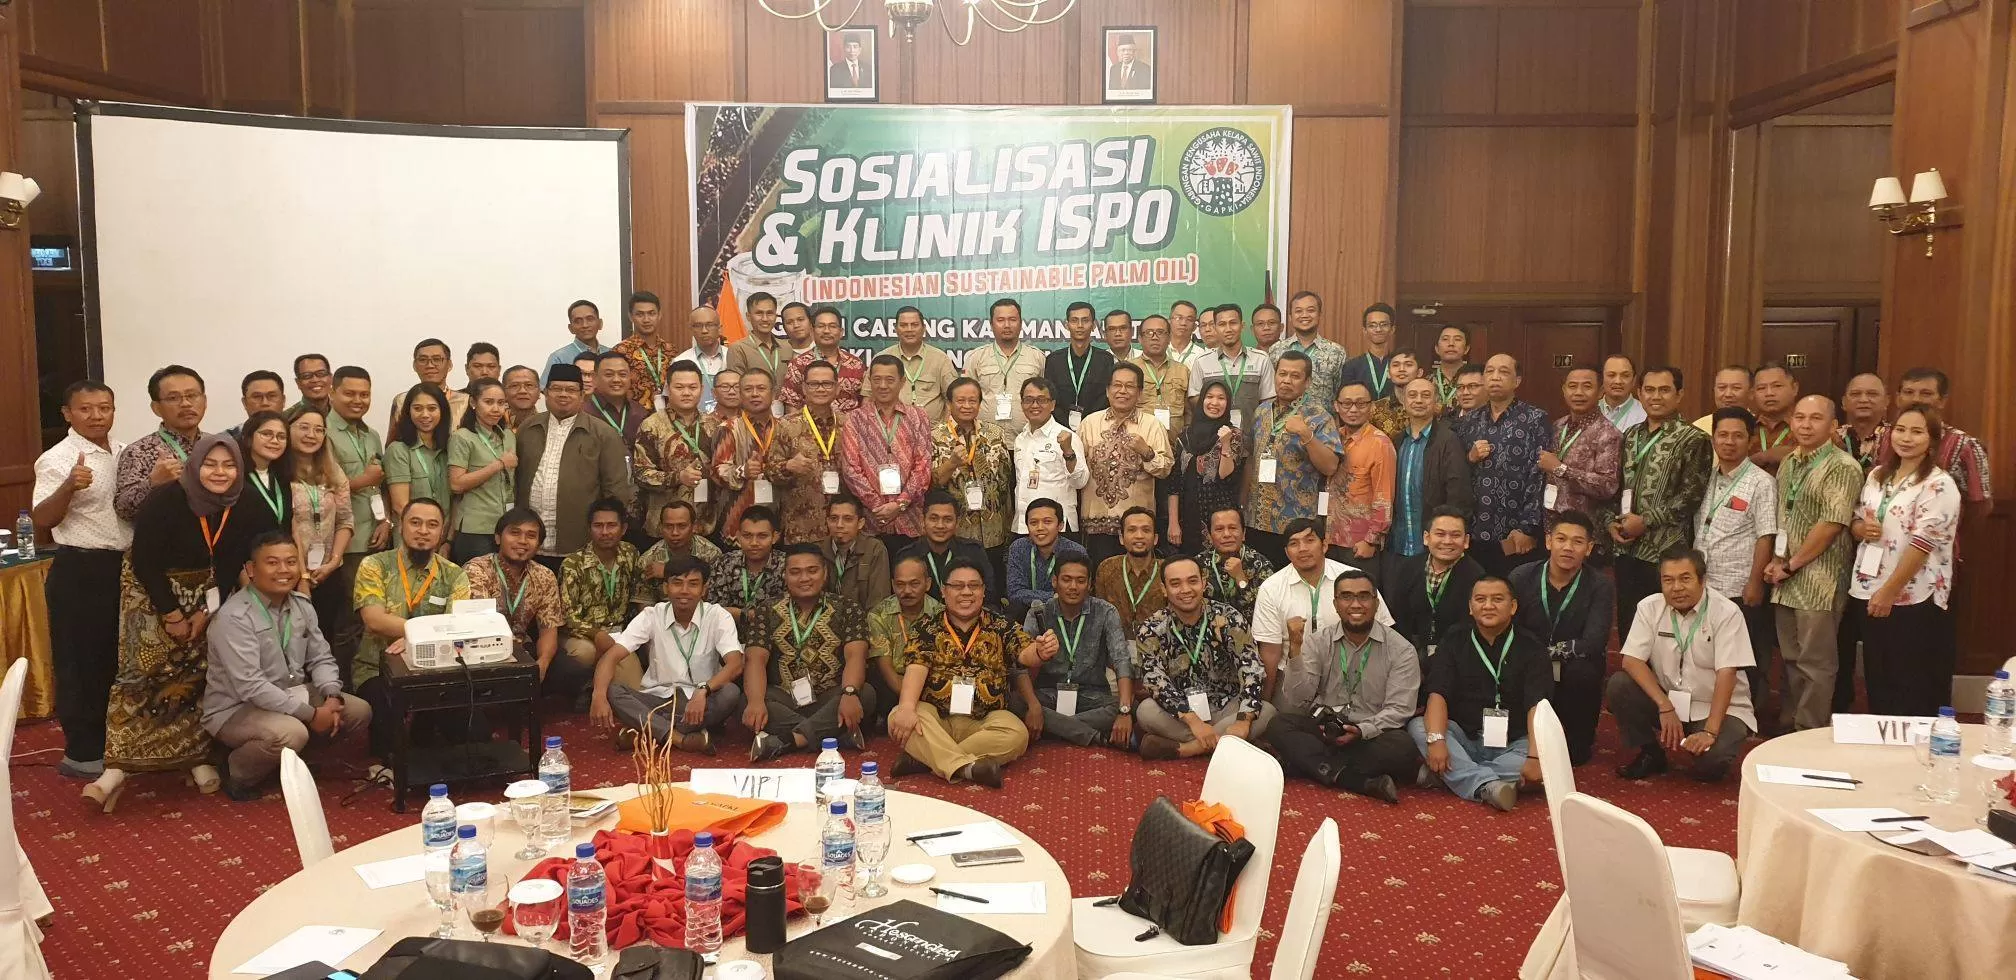 ASAH KEMAMPUAN: Peserta Sosialisasi dan Klinik ISPO (Indonesiaan Sustainable Palm Oil) garapan GAPKI Kaltim-Kaltara dan Pusat yang di gelar Hotel Gran Senyiur.